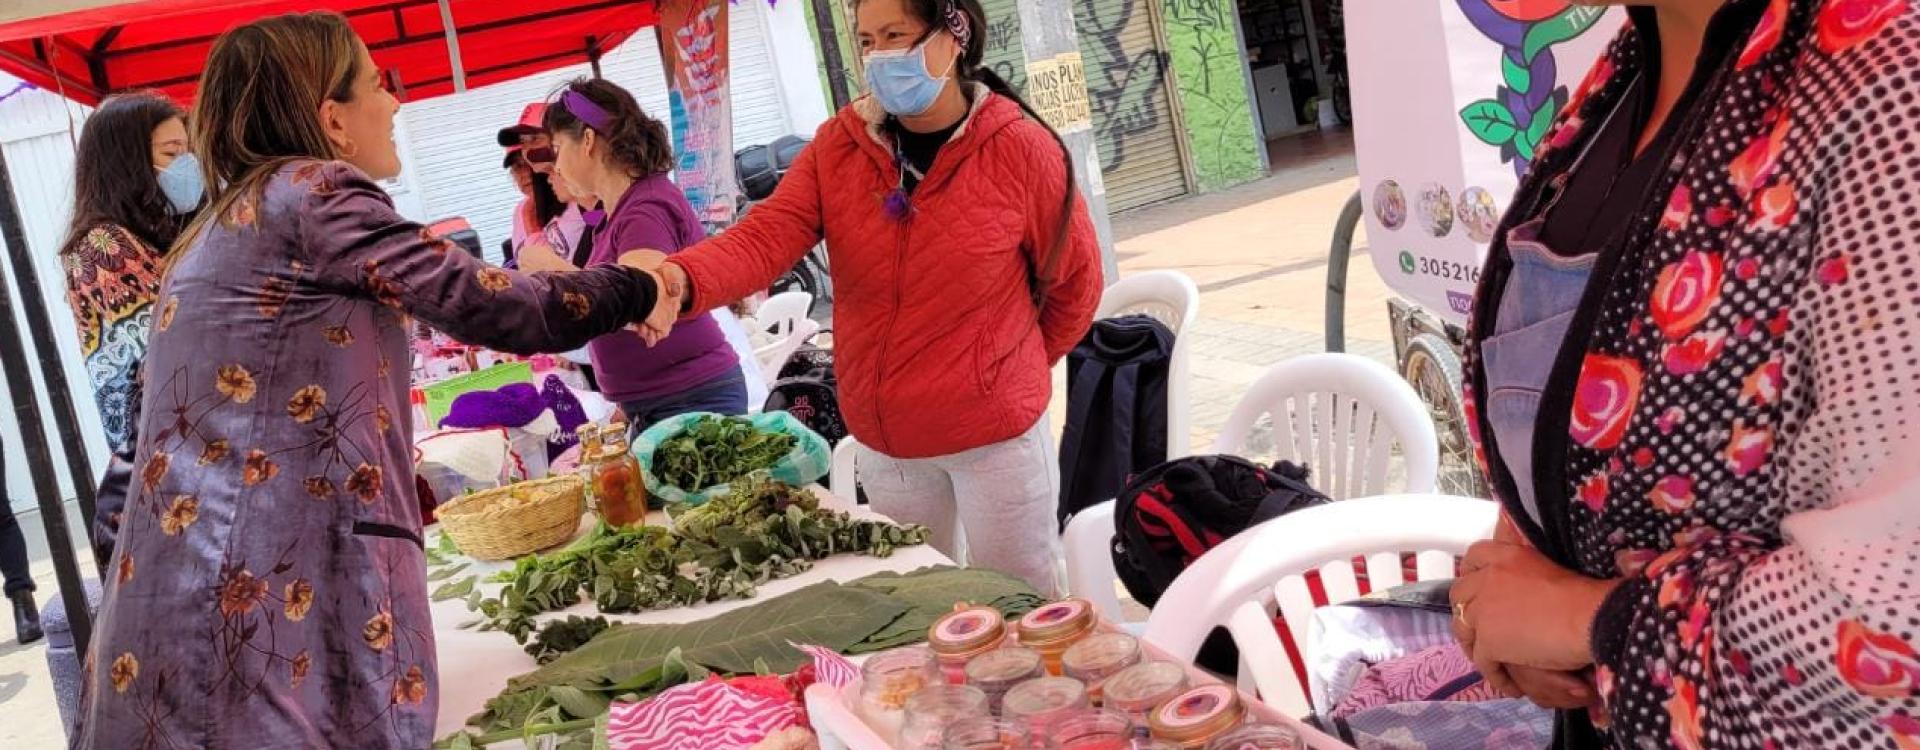 Mujeres de la localidad de Bosa en muestra gastronómica, cultural y artesanal